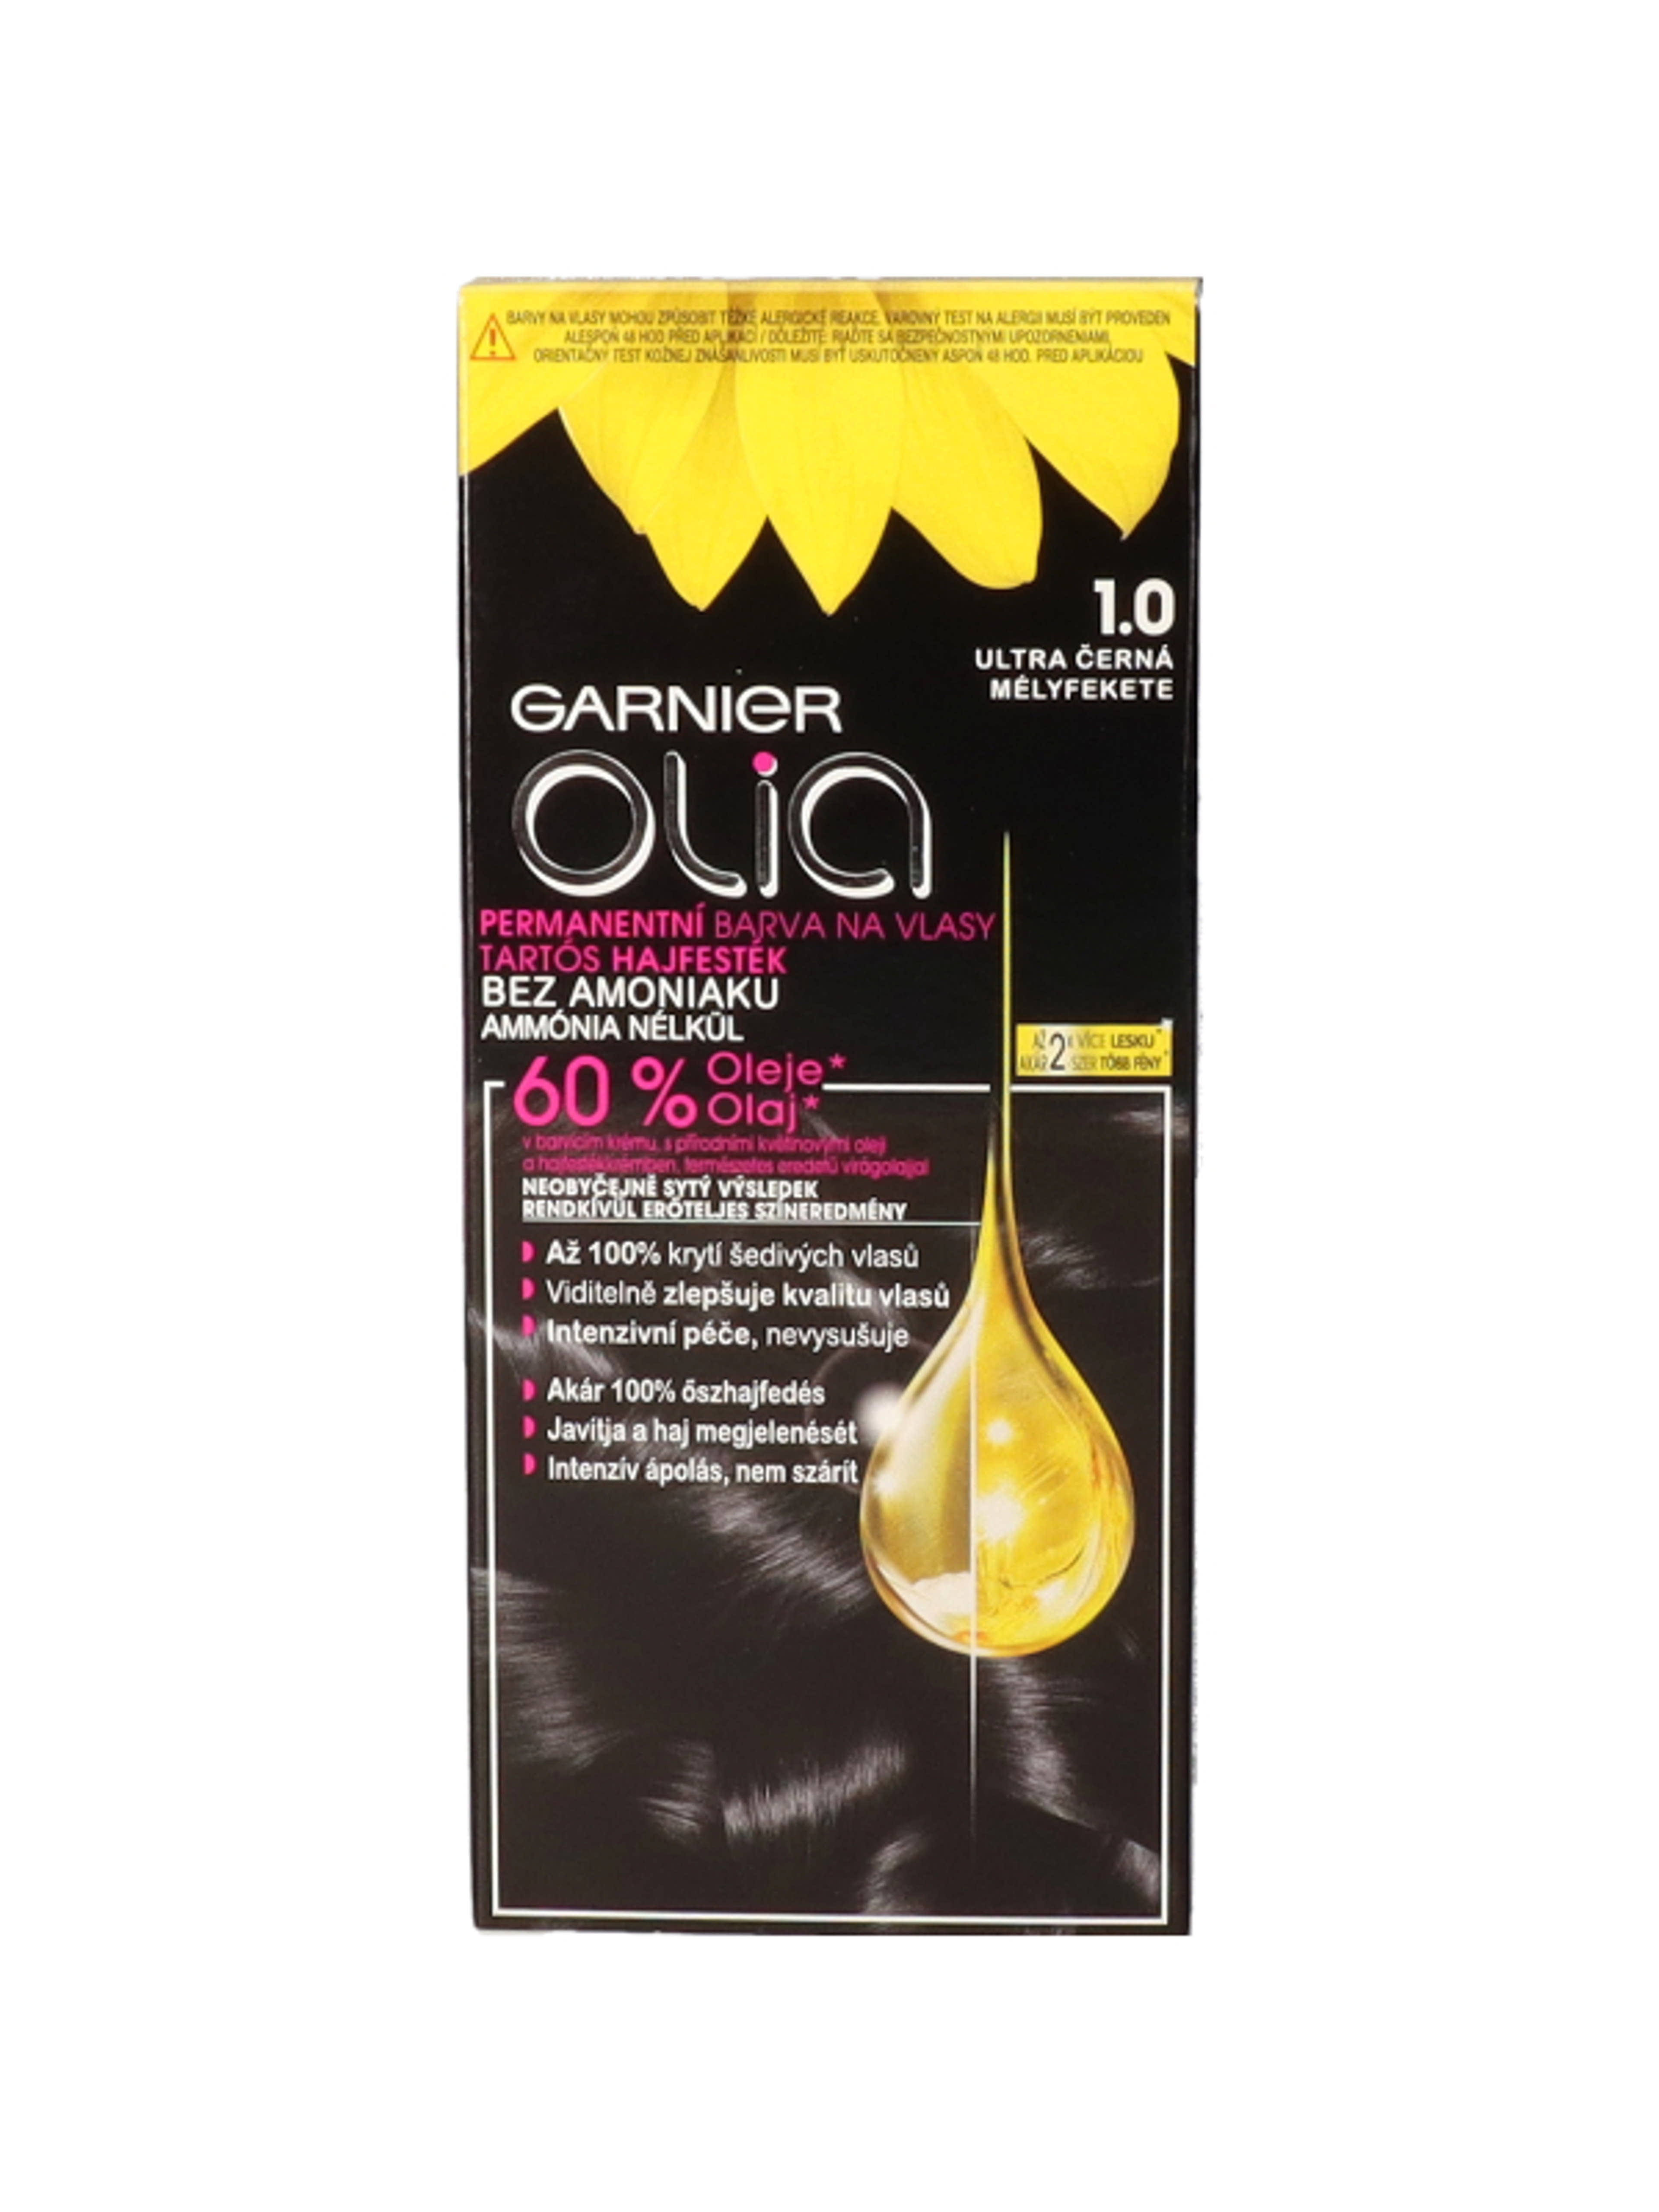 Garnier Olia tartós hajfesték 1.0 Mélyfekete - 1 db-1